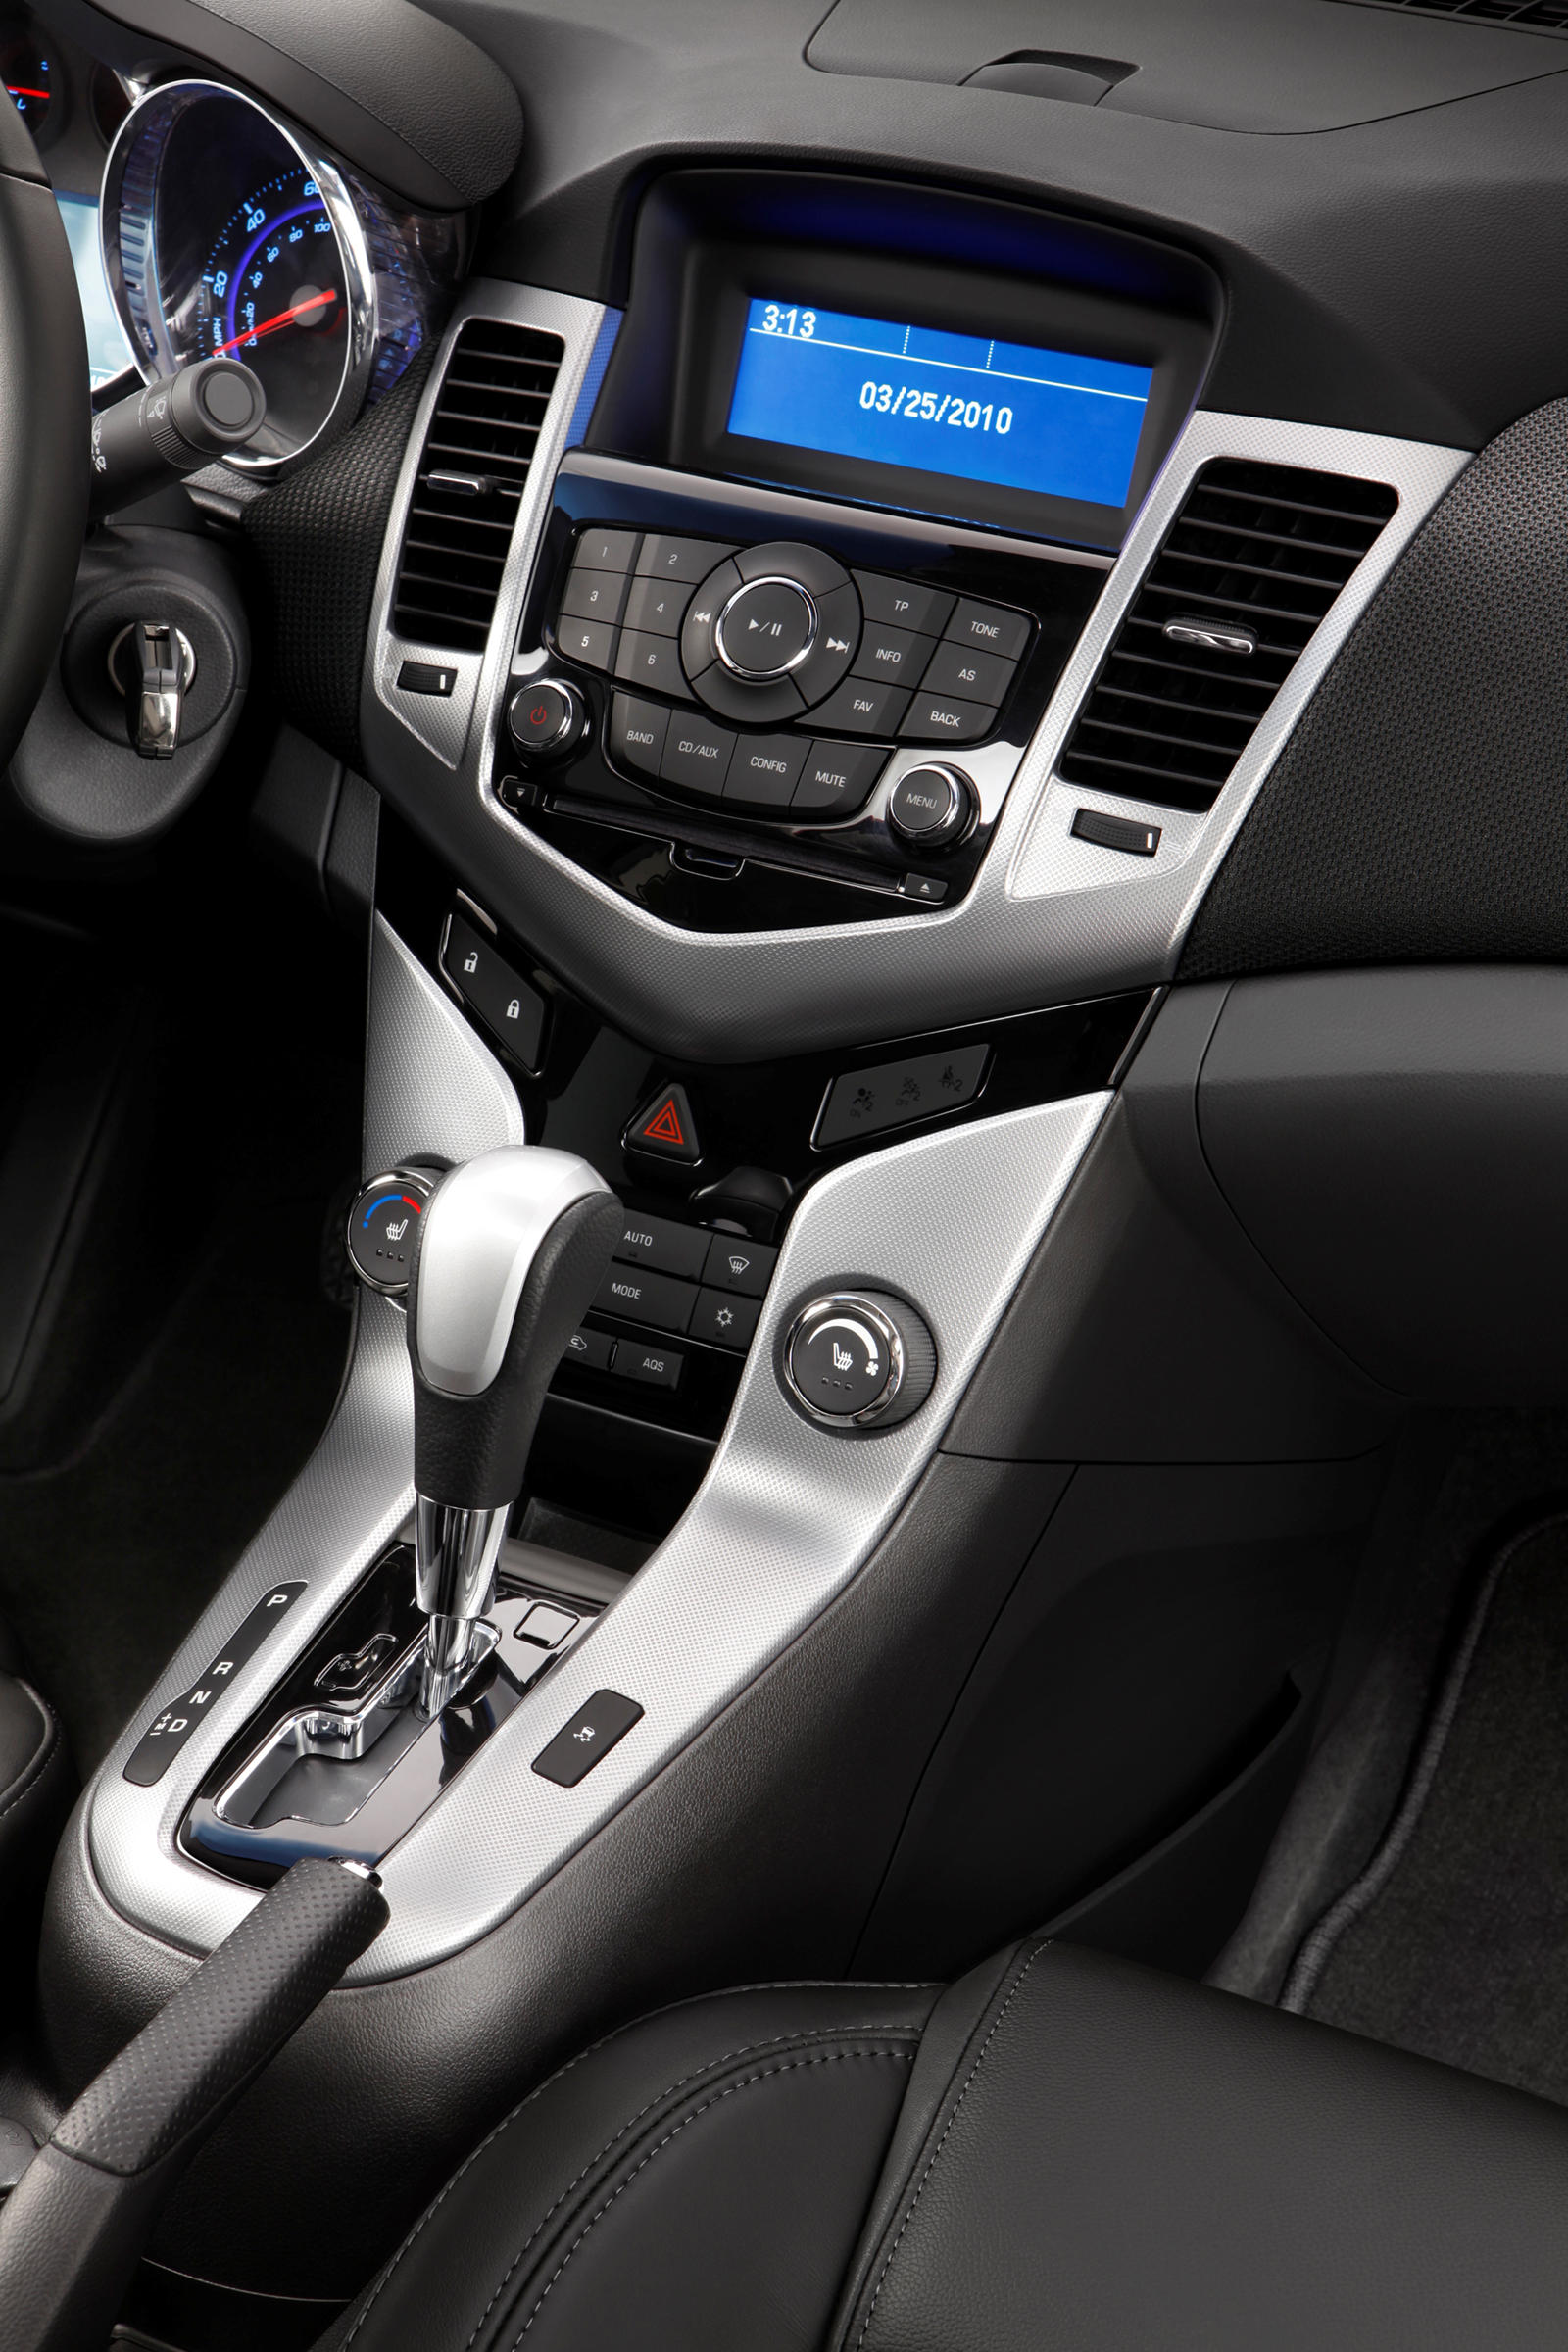 2013 Chevrolet Cruze Sedan Interior Photos | CarBuzz